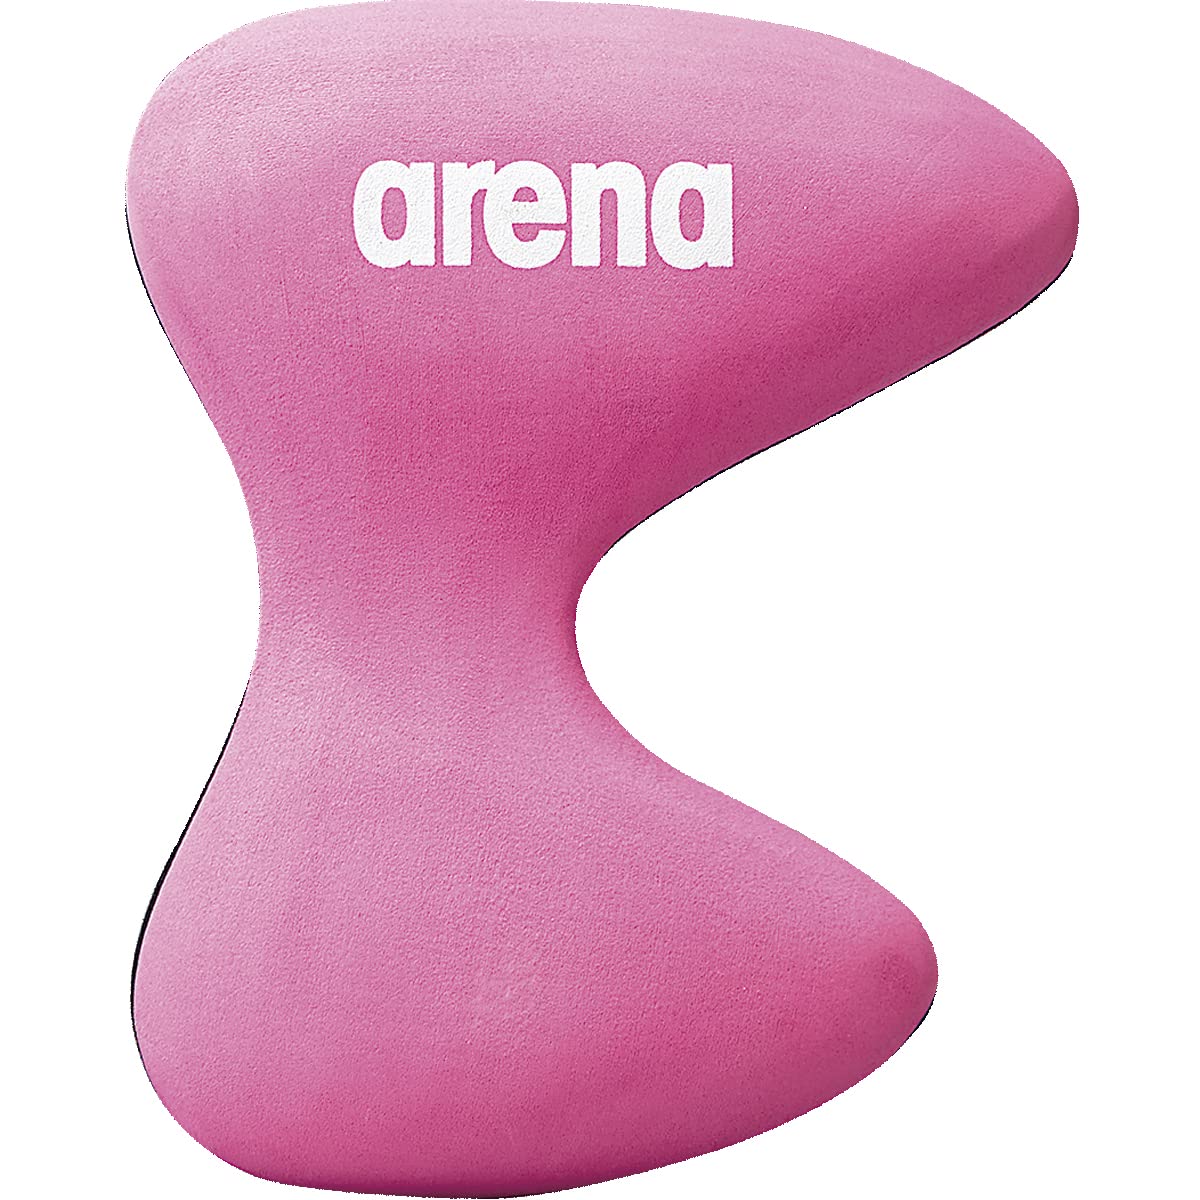 arena(アリーナ) ビート板 練習用 プルキックプロ フリーサイズ(約24.2×19×5.8cm) FAR-6926 ピンク(PNK)